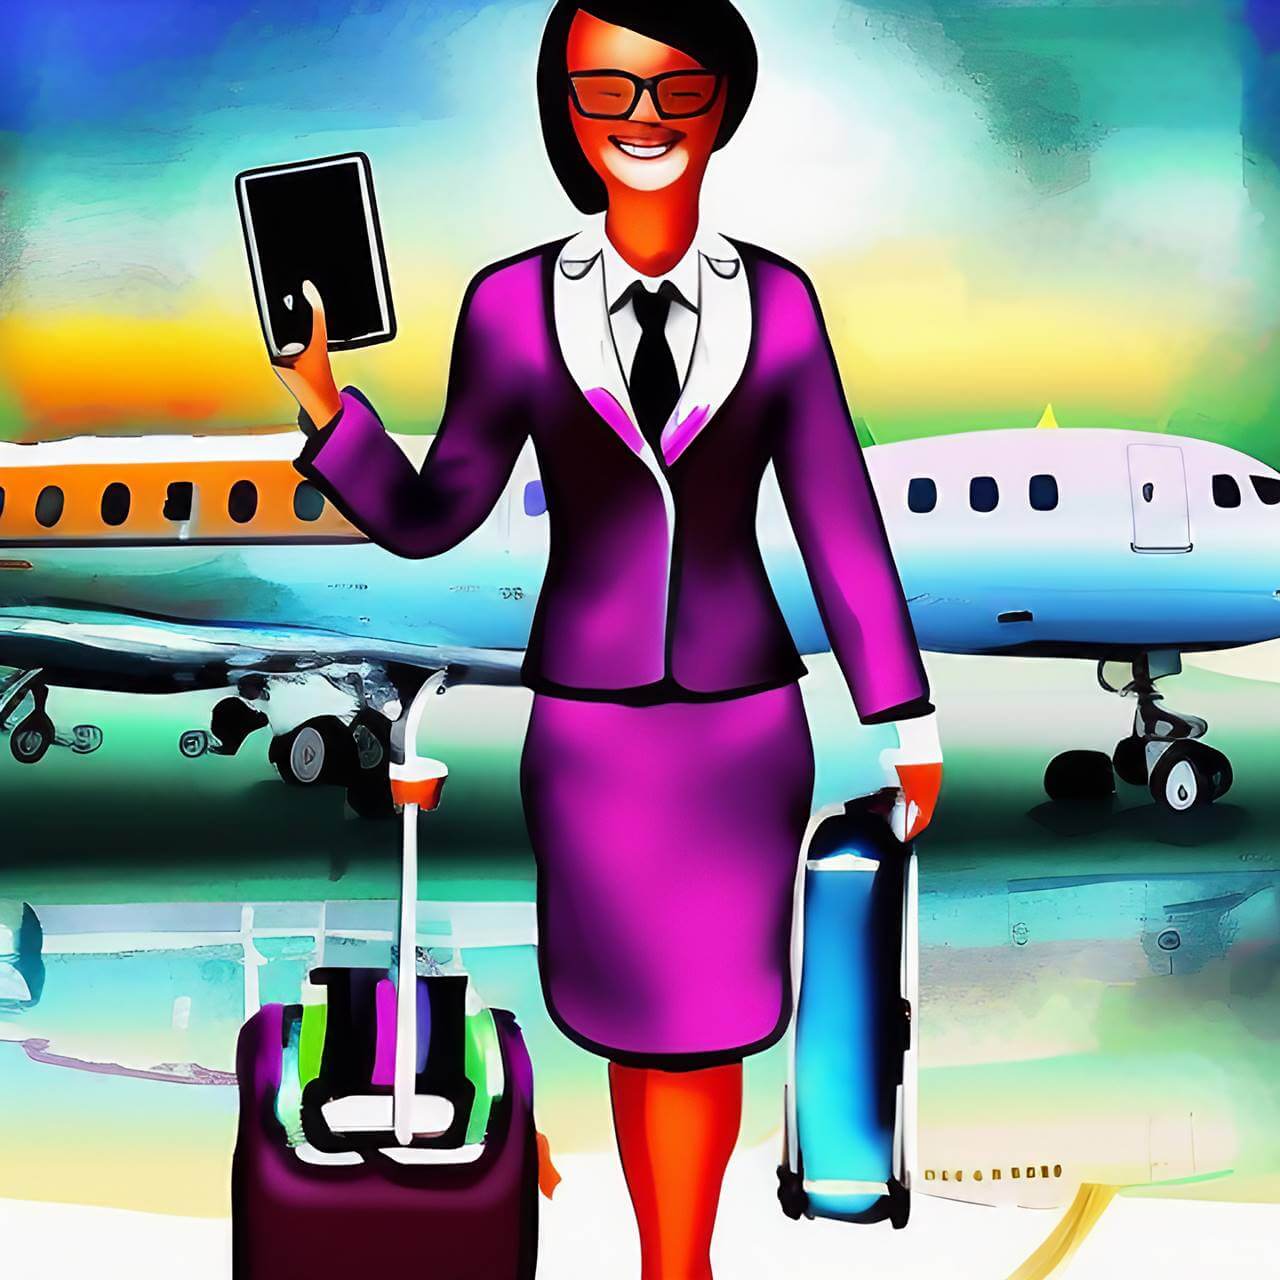 instagram captions for flight attendants